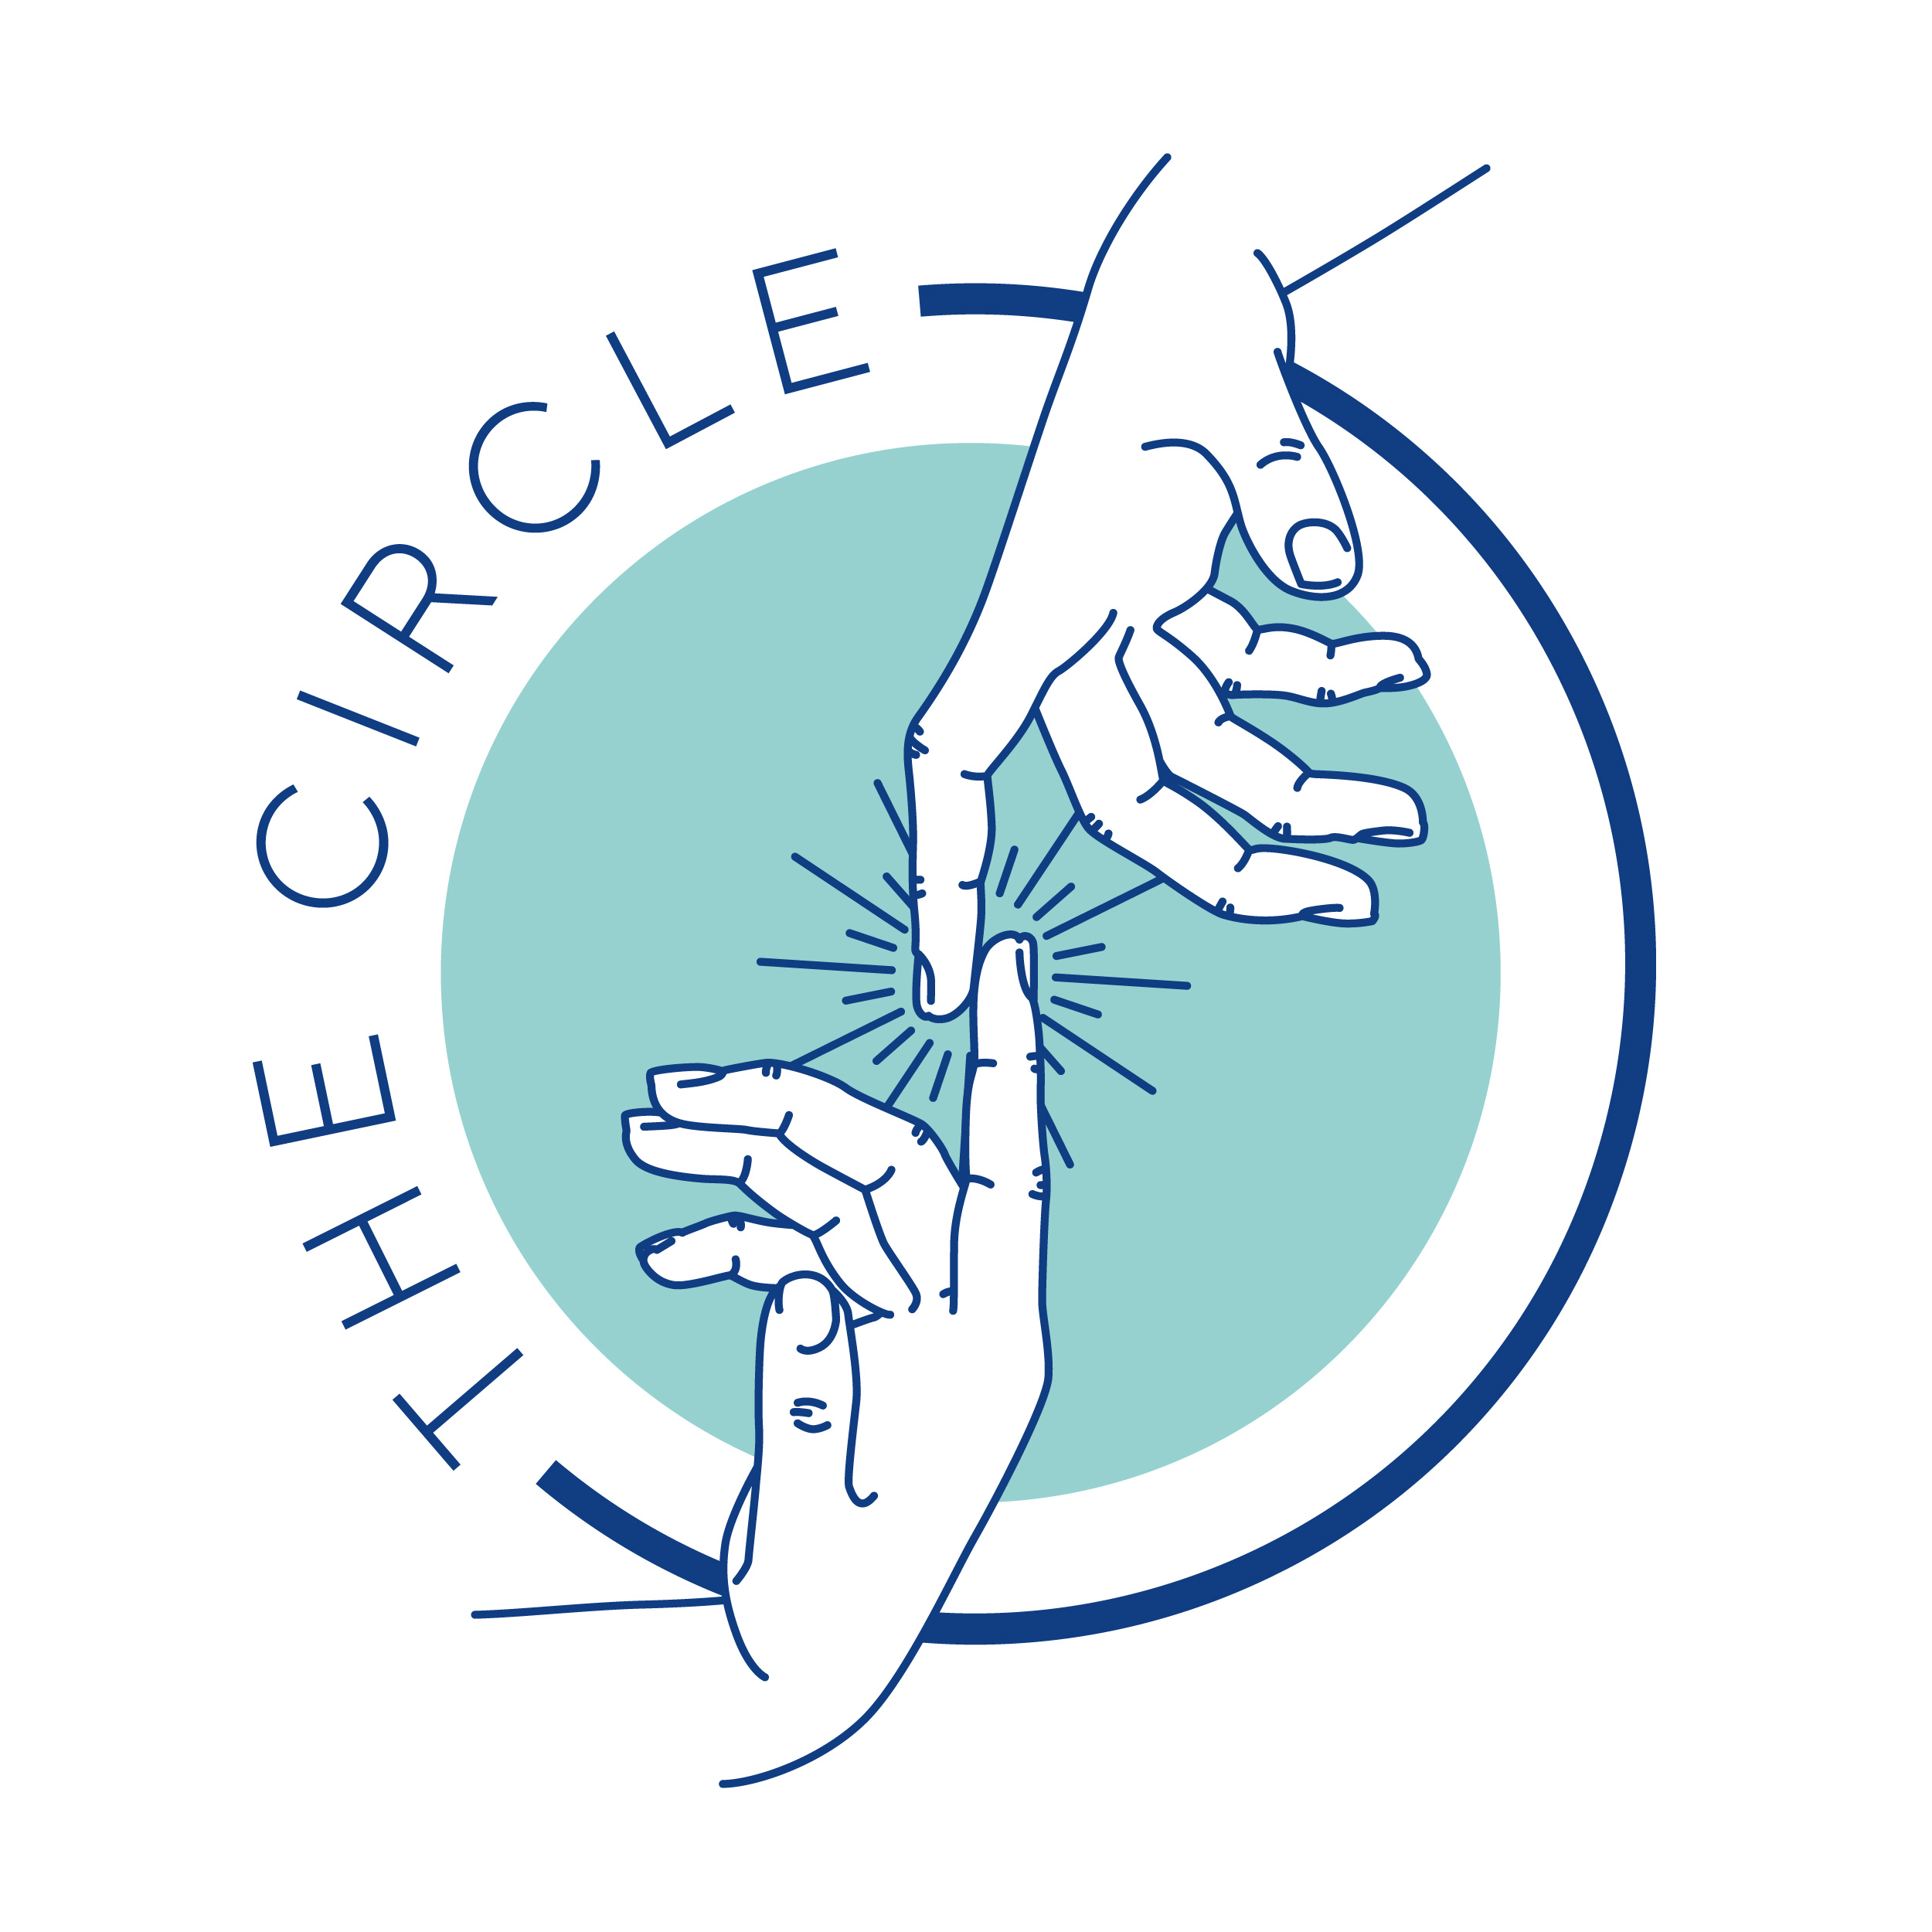 Логотип The Circle - соединяющие руки